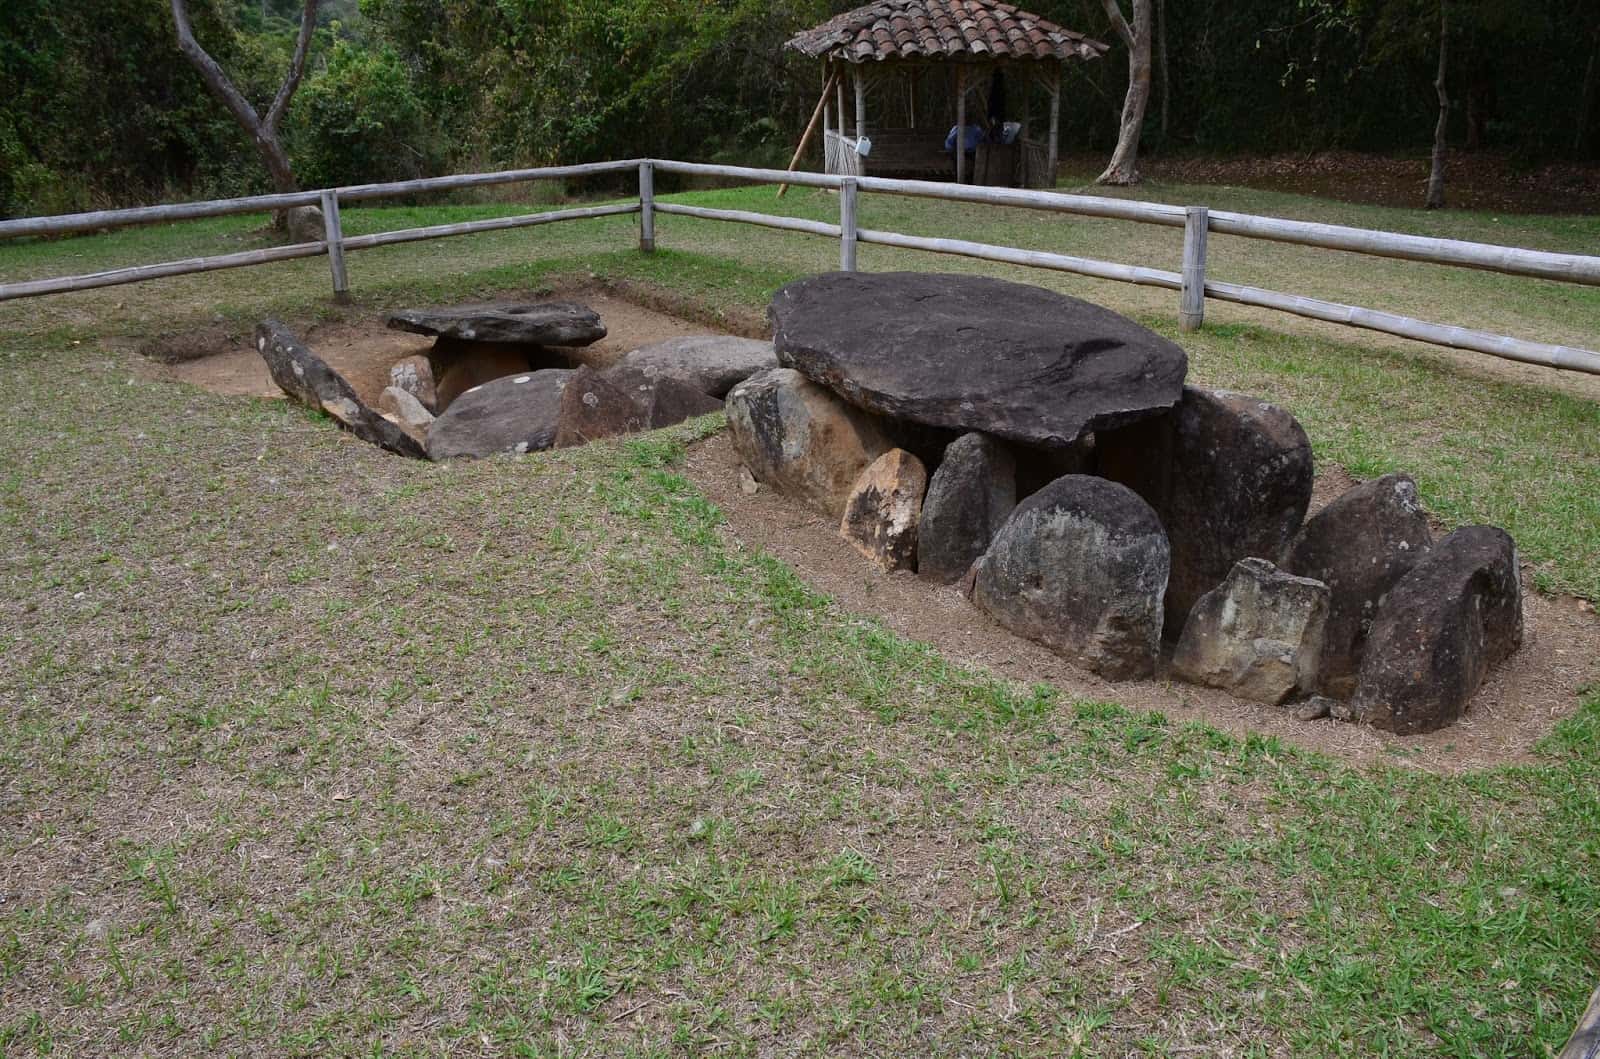 Mesita C at San Agustín Archaeological Park in Huila, Colombia